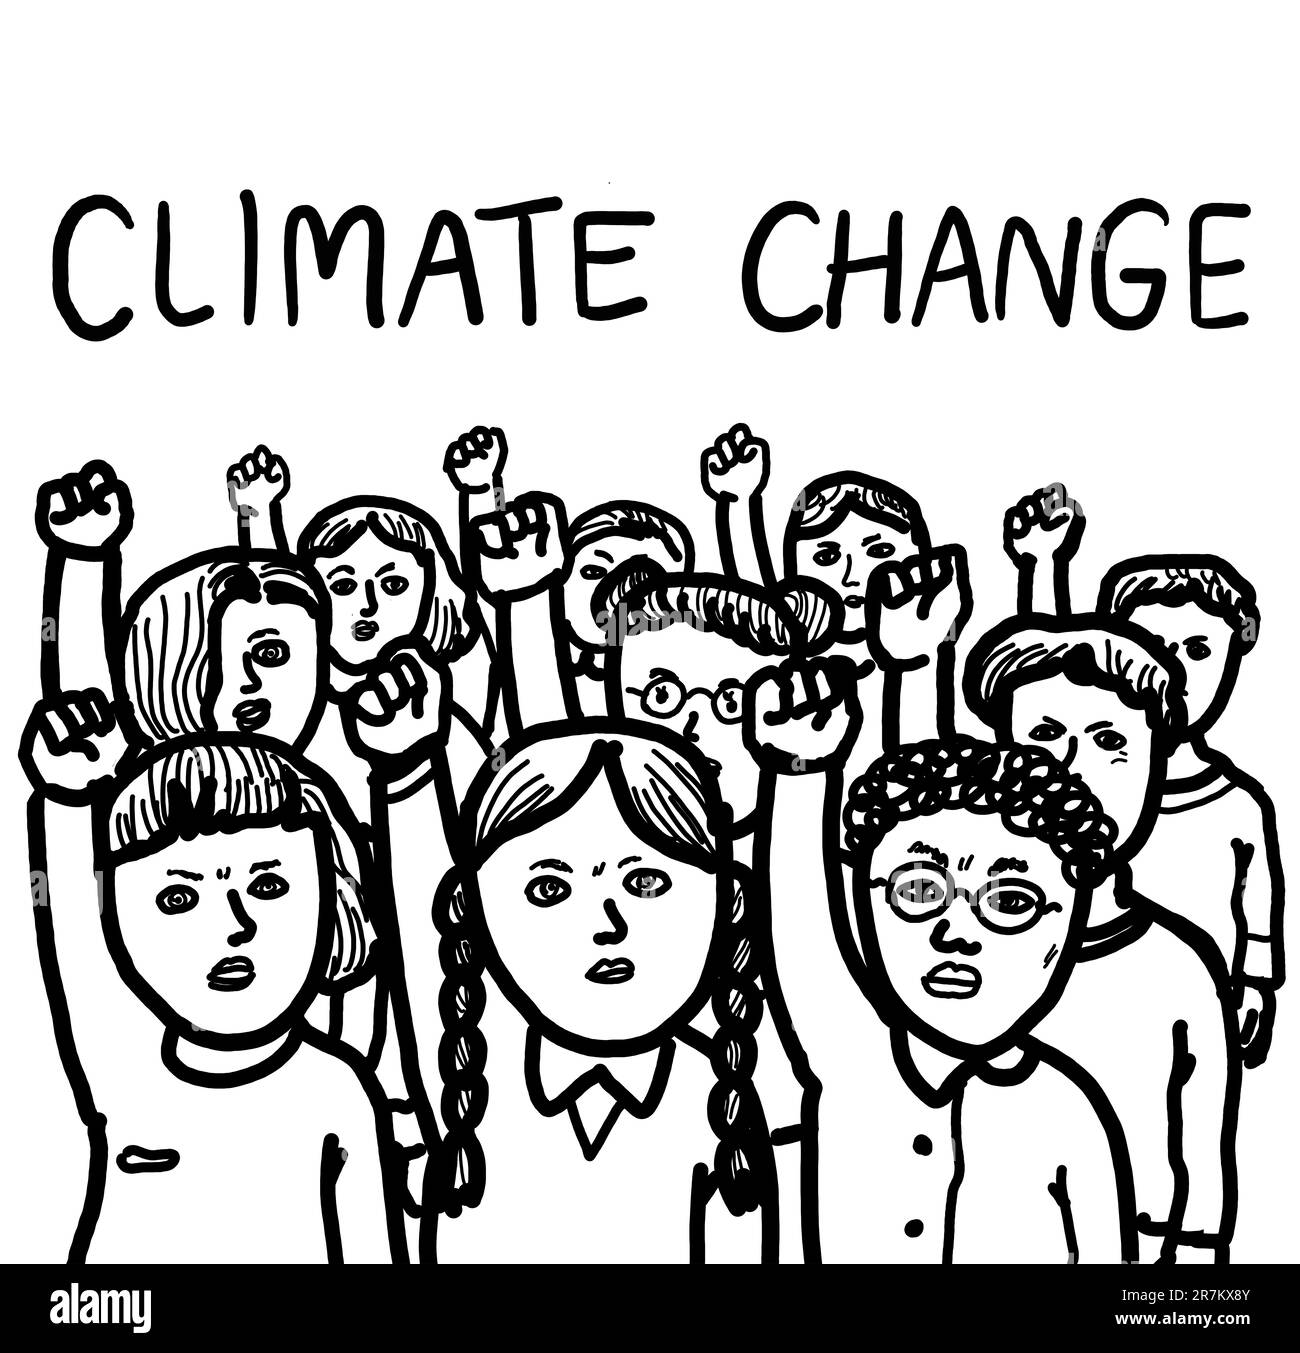 Un groupe de jeunes étudiants militants protestant et font un mouvement social sur le changement climatique. Banque D'Images